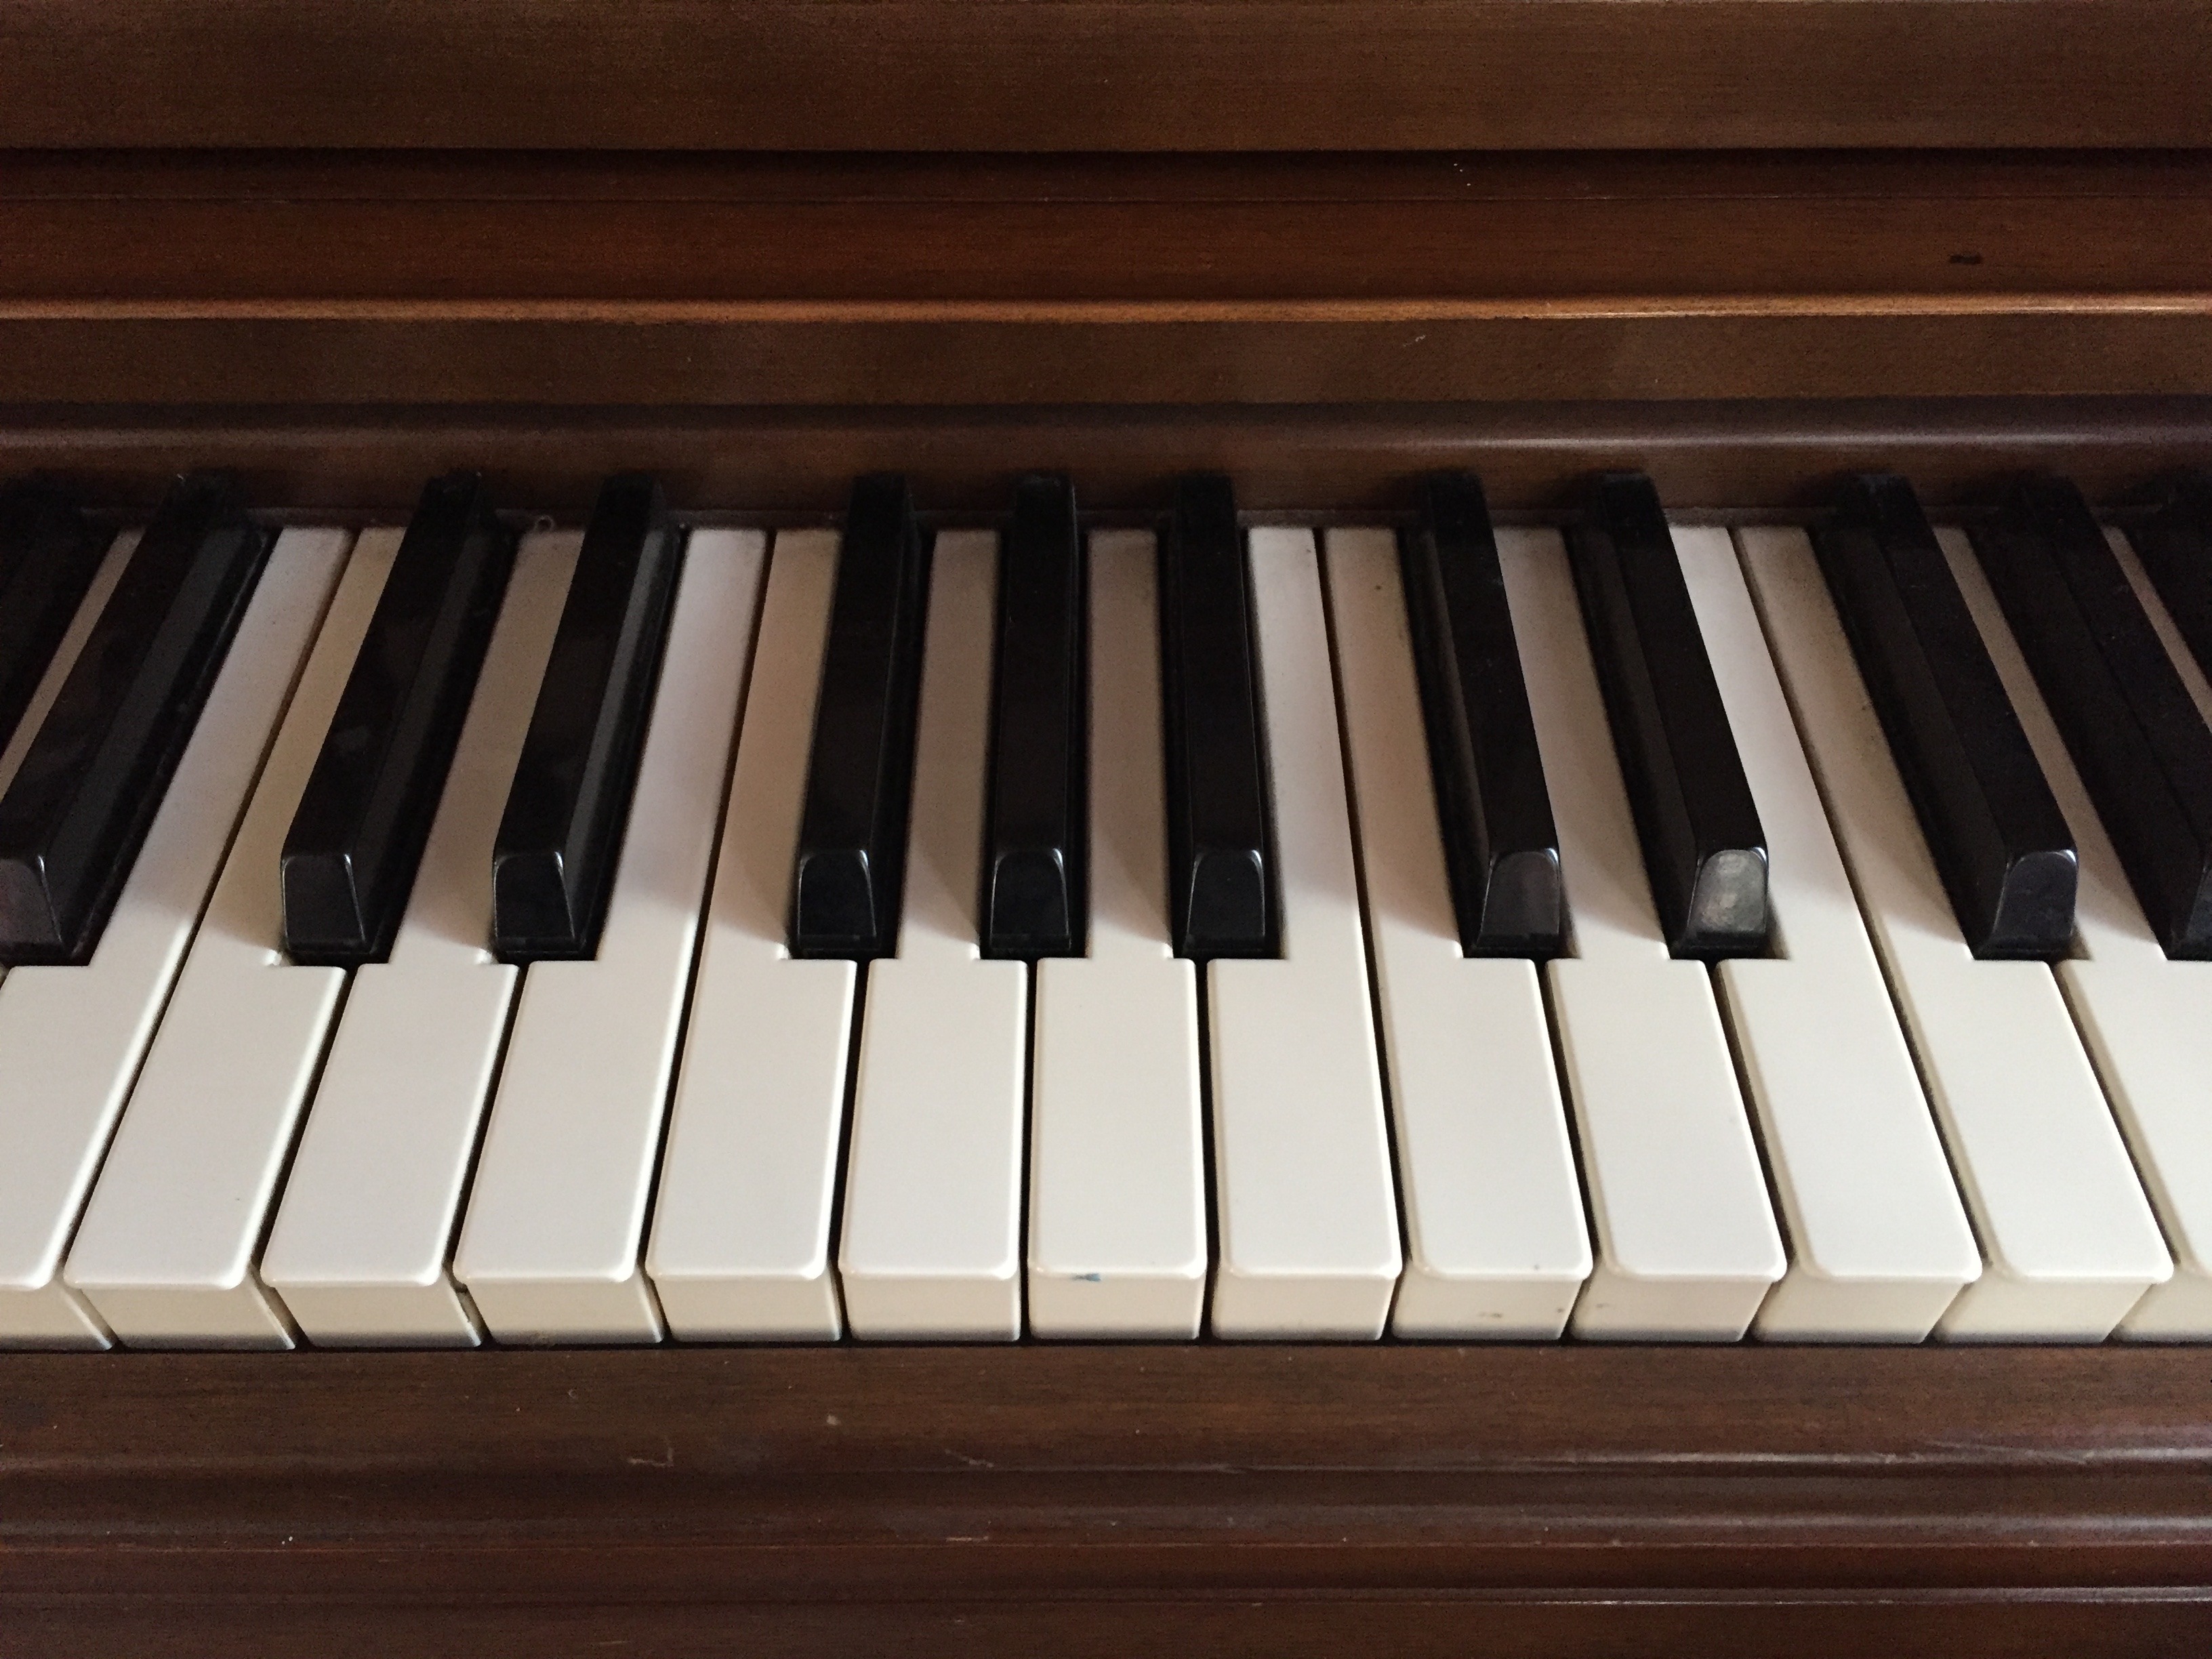 DouglasLeeMusic_pianoKeyboard